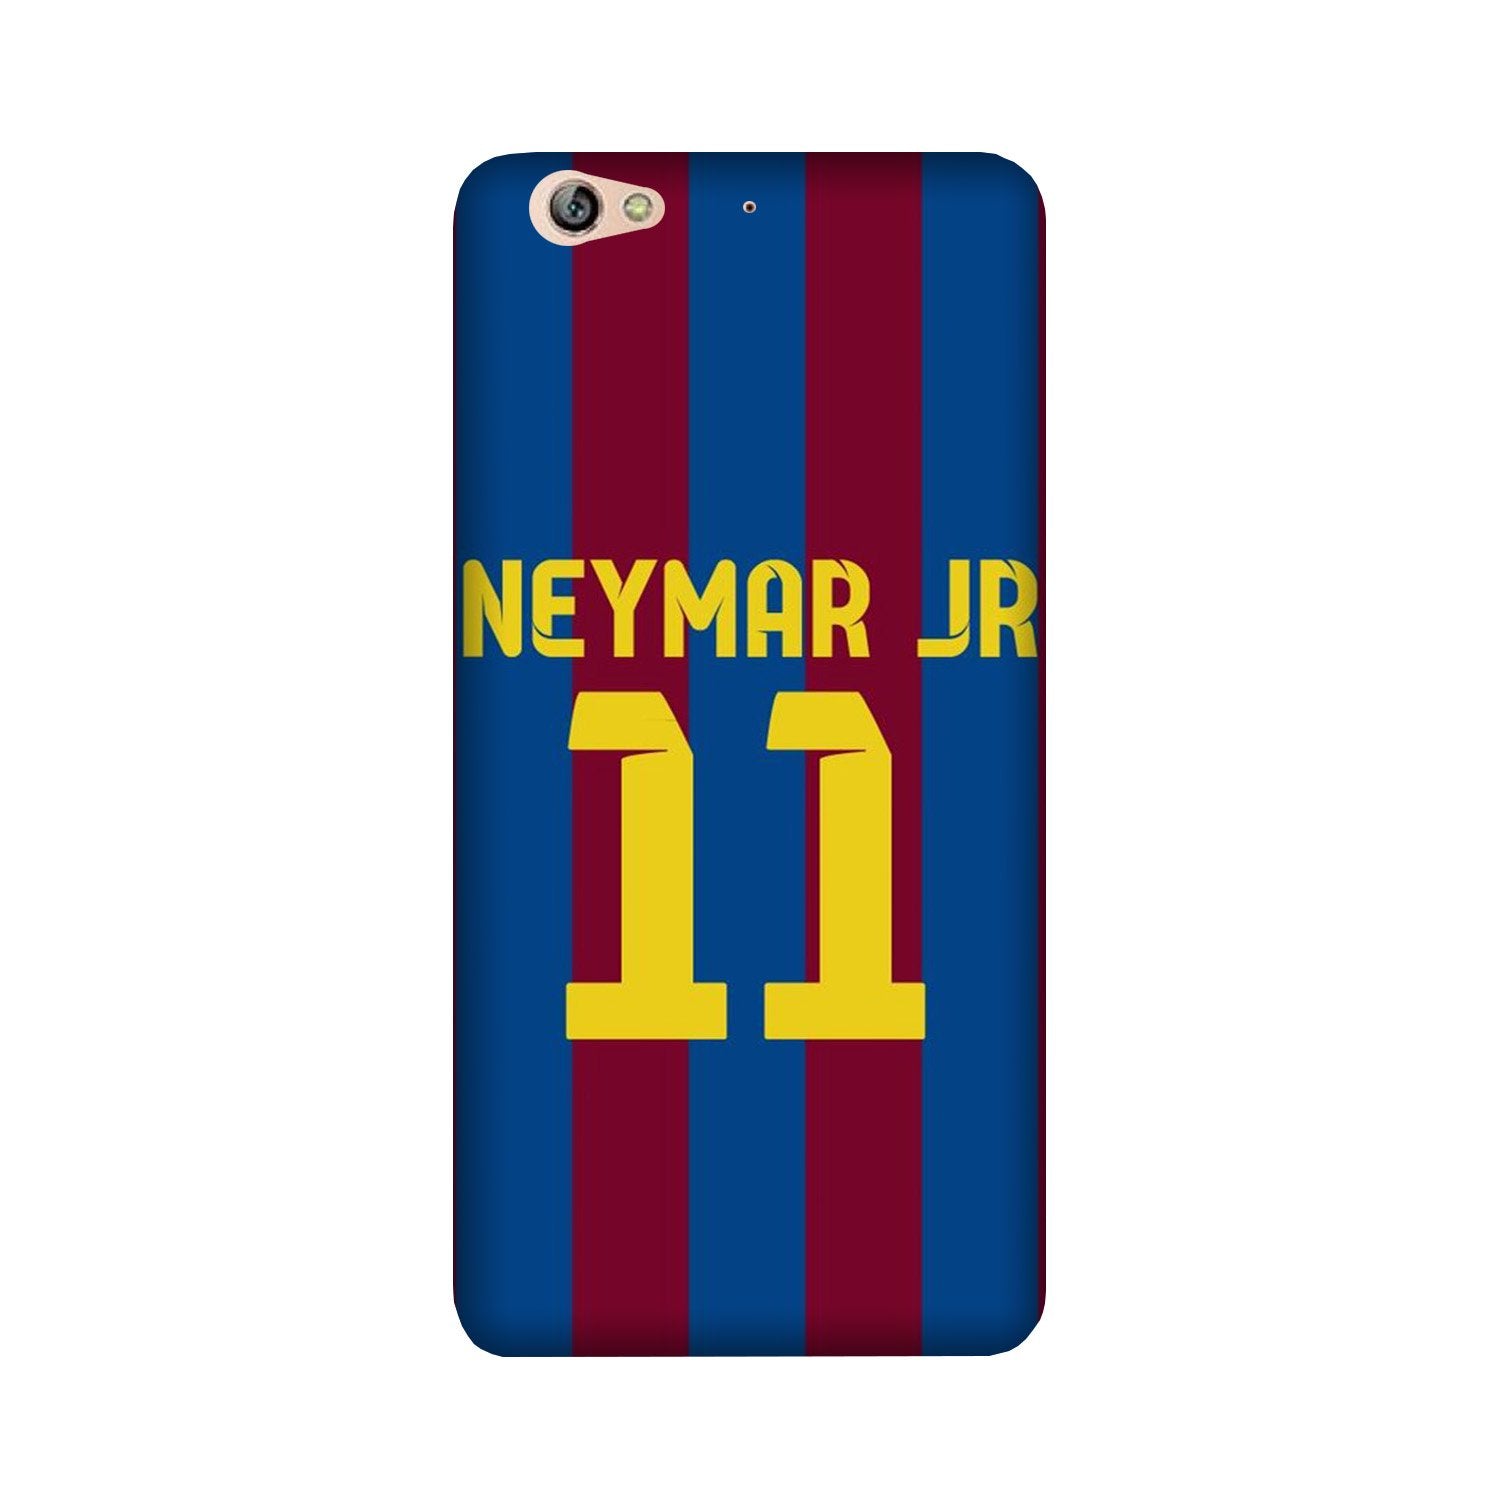 Neymar Jr Case for Gionee S6(Design - 162)